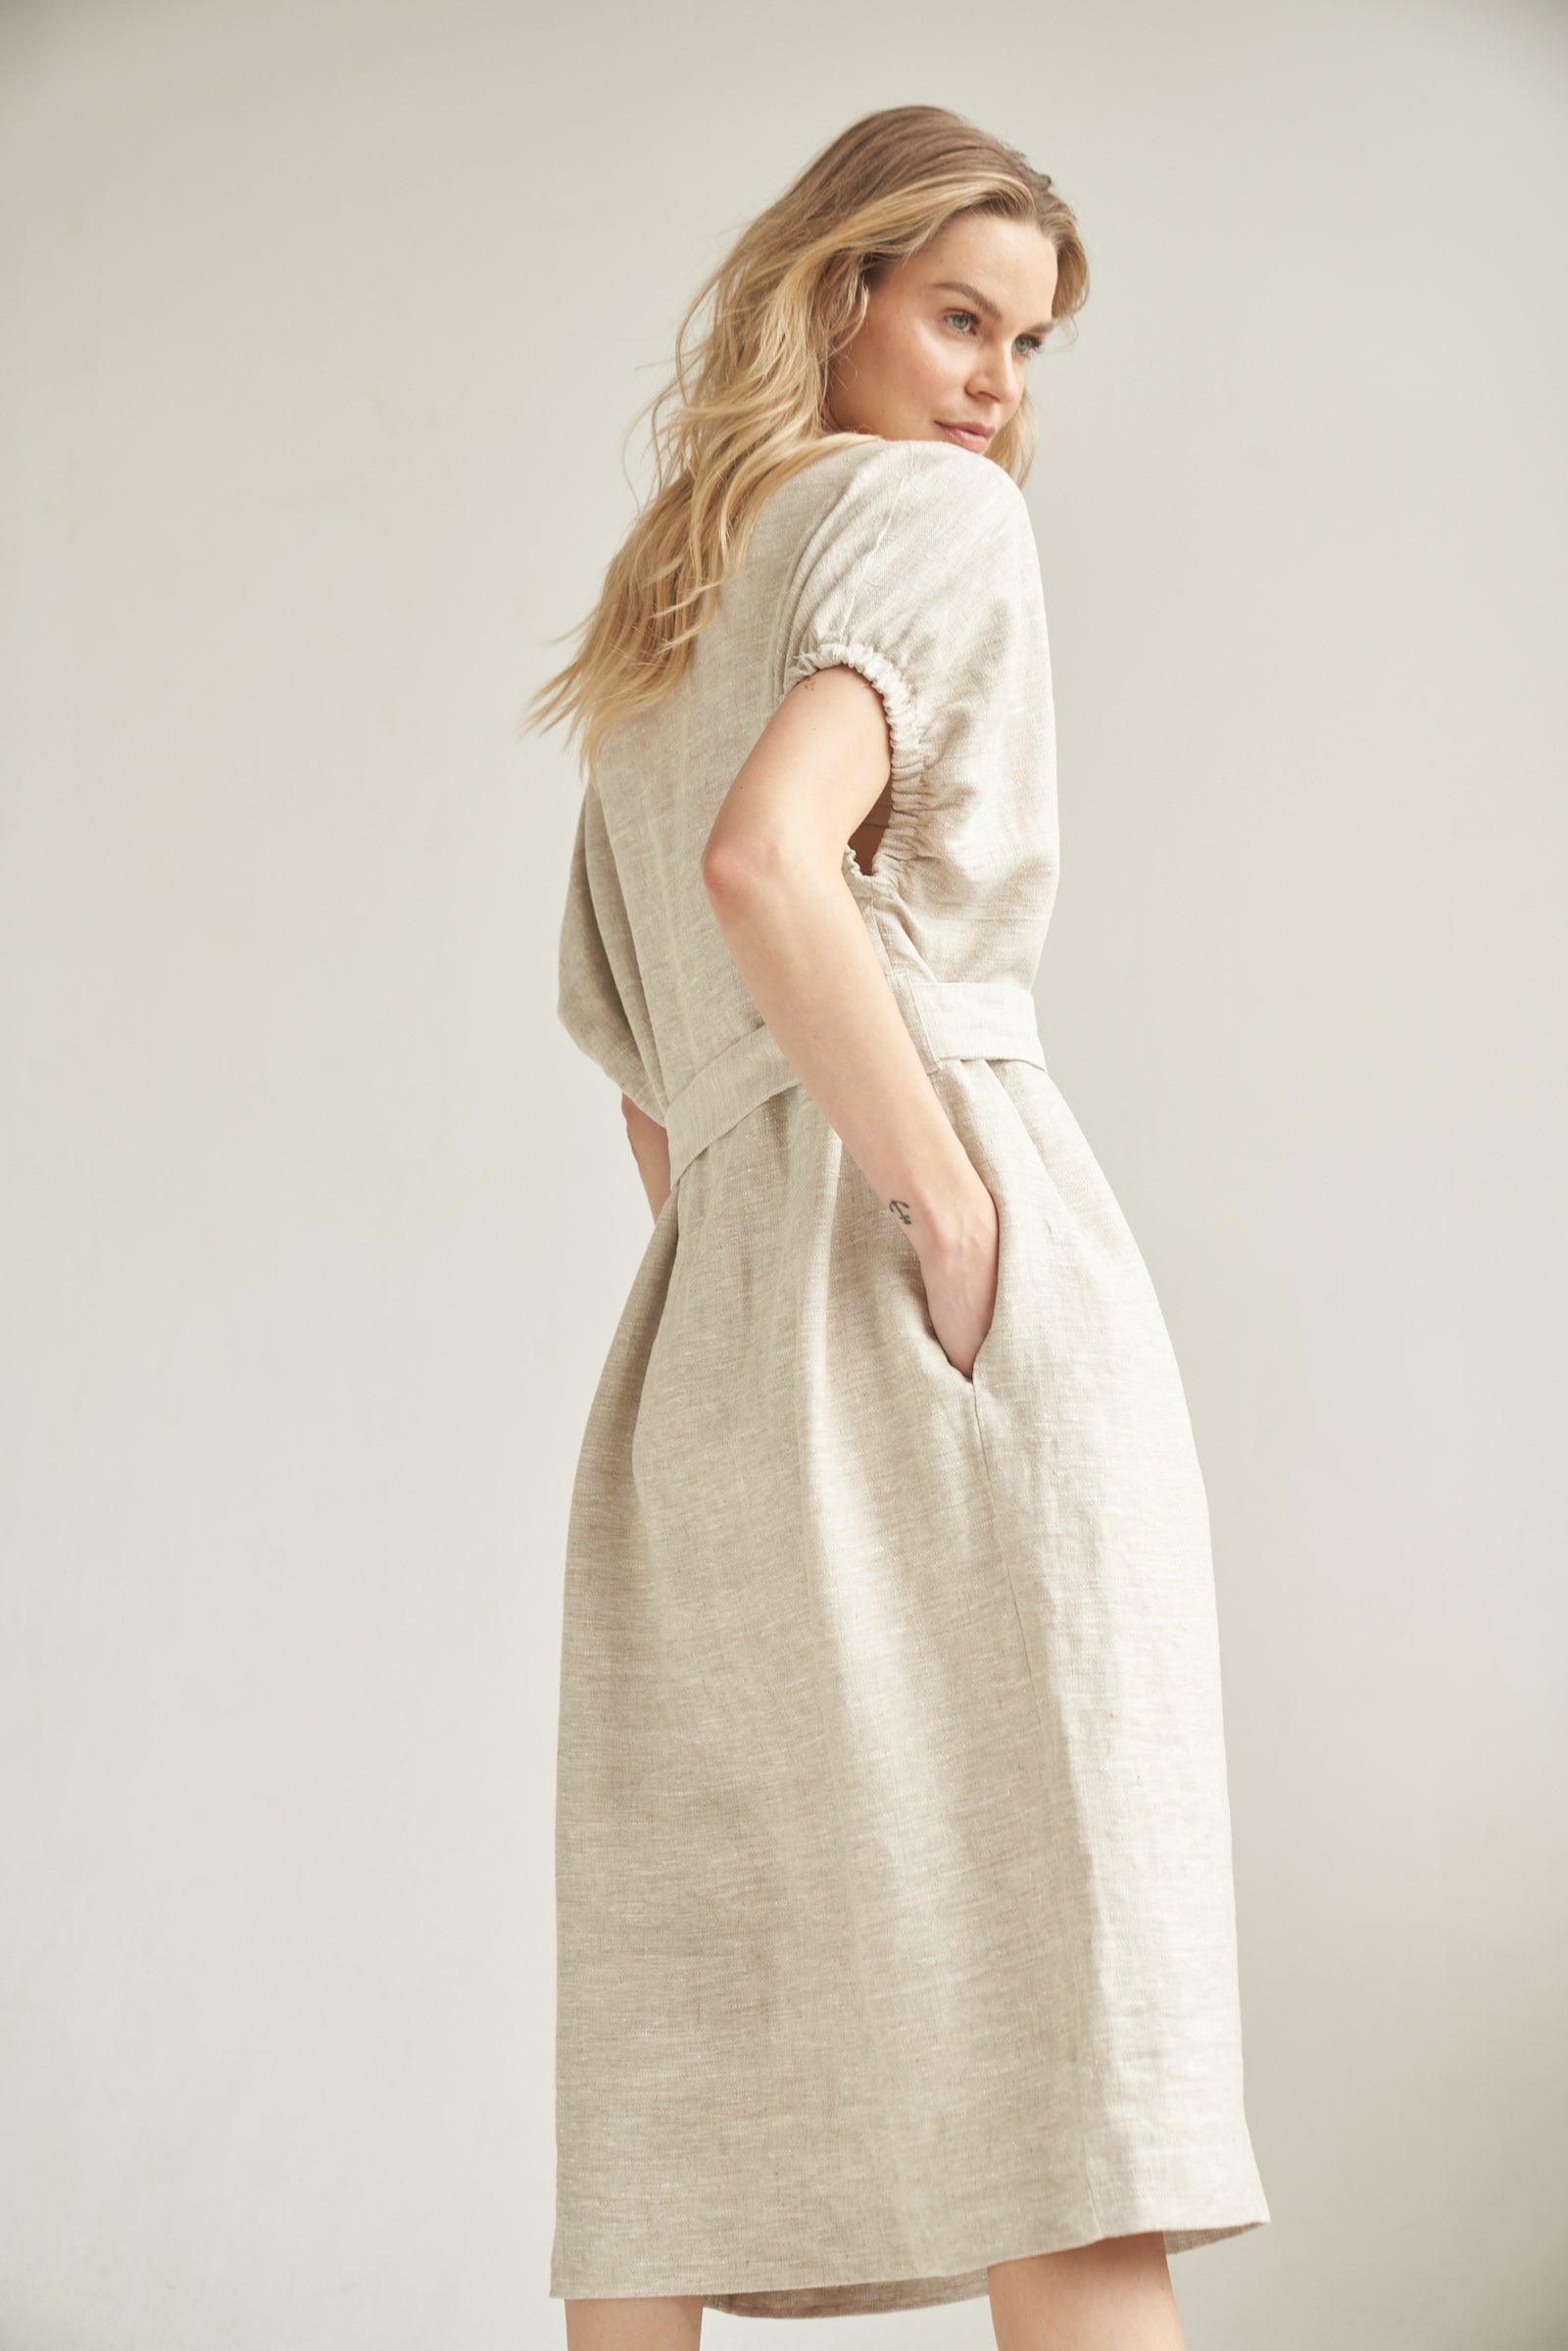 Das Oversize-Kleid aus Leinen in der Farbe natur wird von einem blonden Model getragen. Sie steht vor einem hellen Hintergrund und hat ihre rechte Hand in der integrierten Eingrifftasche. Die Rückseite des Oversize-Kleid ist leicht von der Rückseite zu sehen.